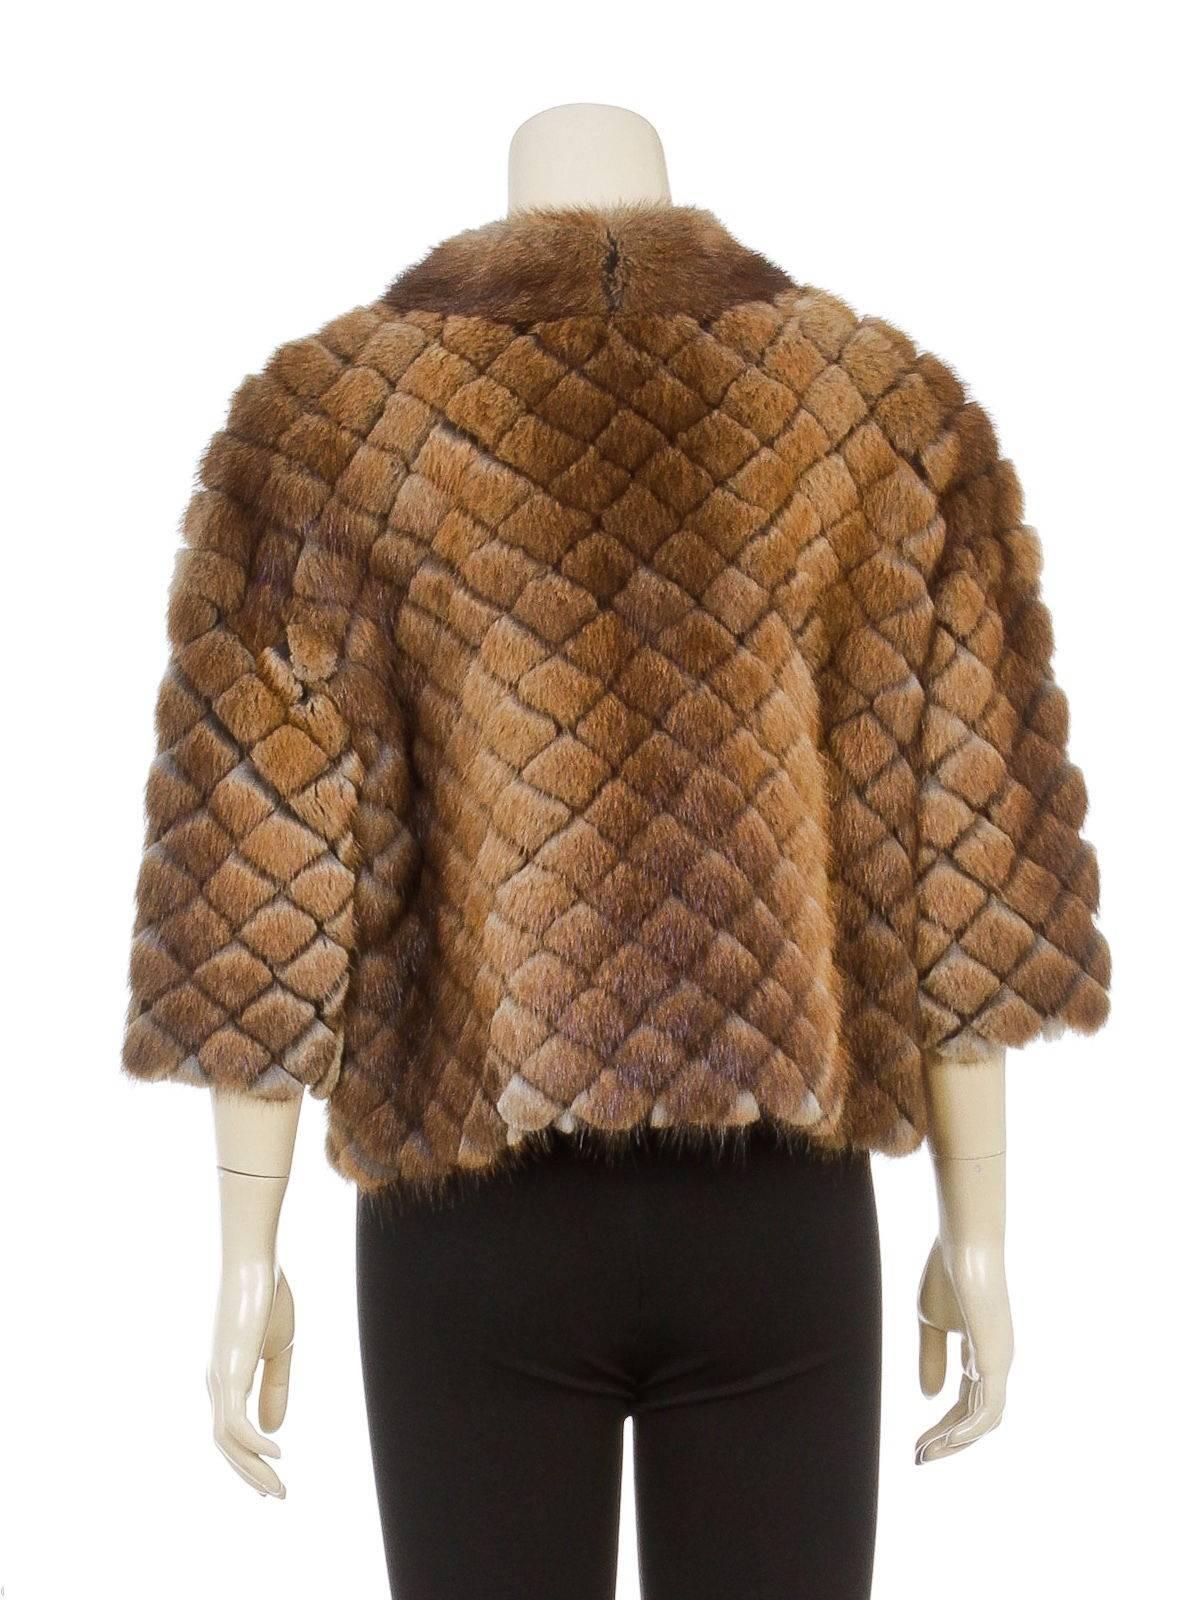 J. Mendel Brown Quilted Muskrat Fur Jacket (Size 12) For Sale 2